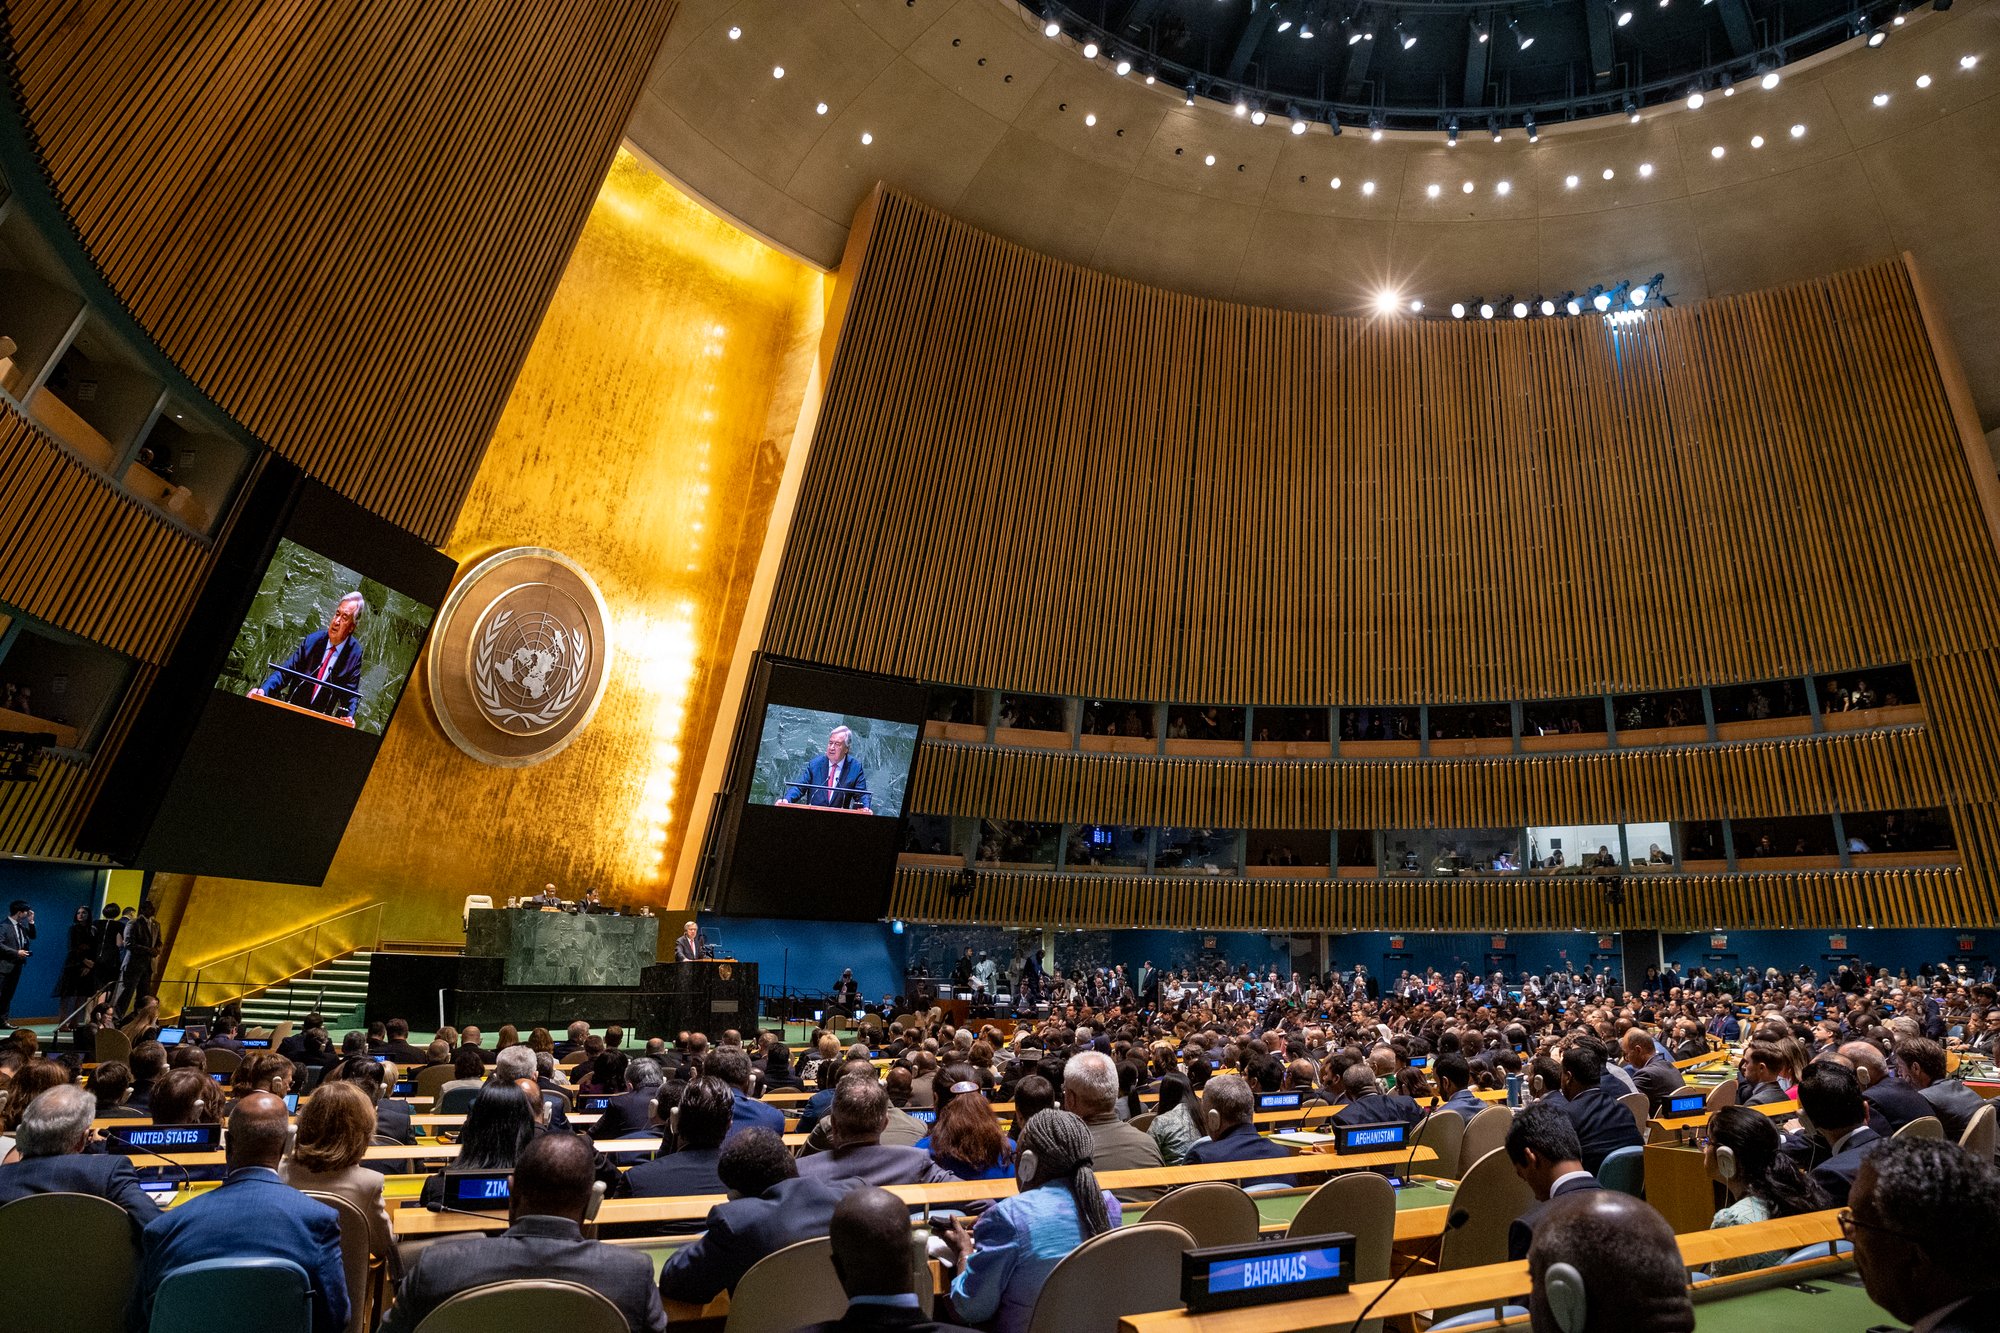 "Abrimos las puertas del infierno": ONU en referencia al cambio climático